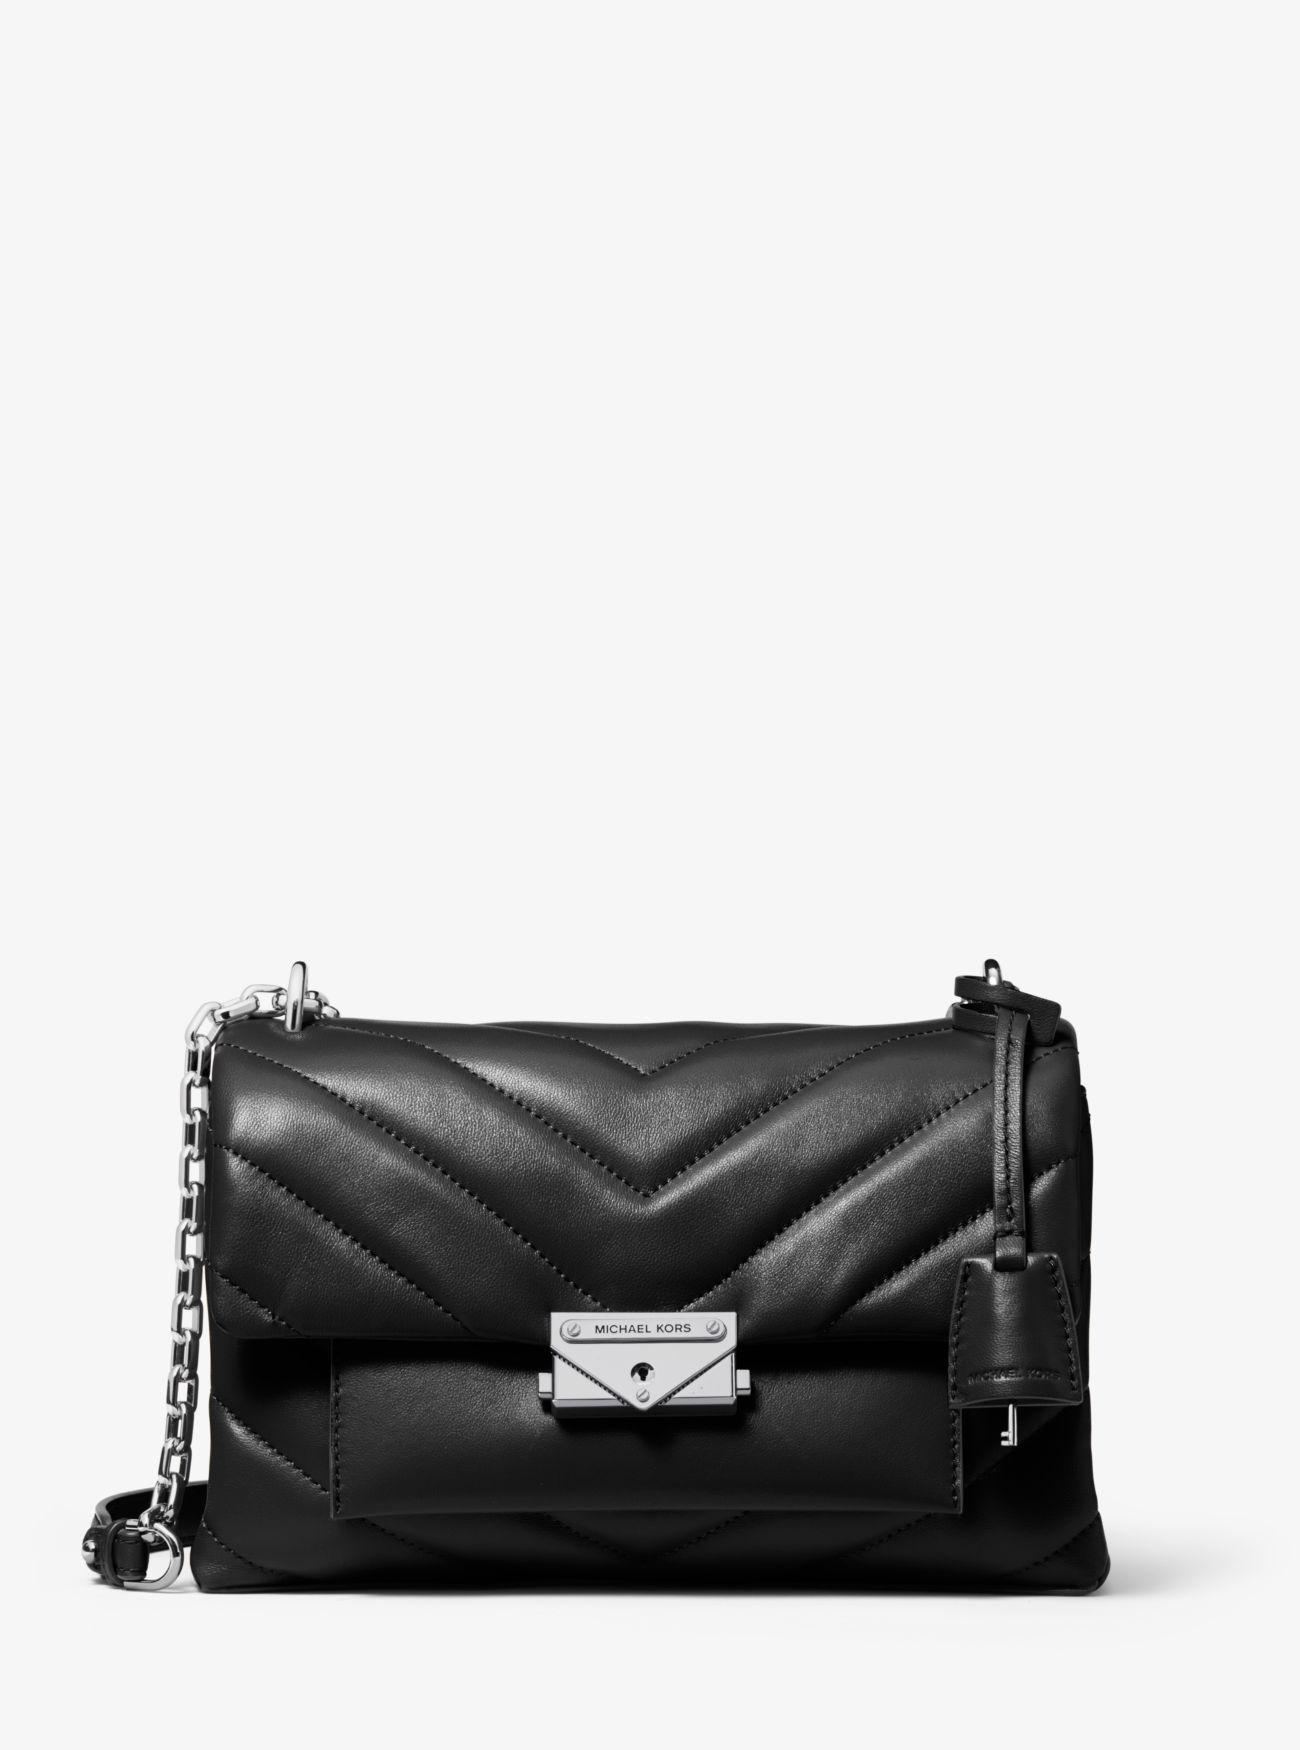 Michael Kors Cece Medium Quilted Leather Shoulder Bag in Black - Save 7 ...